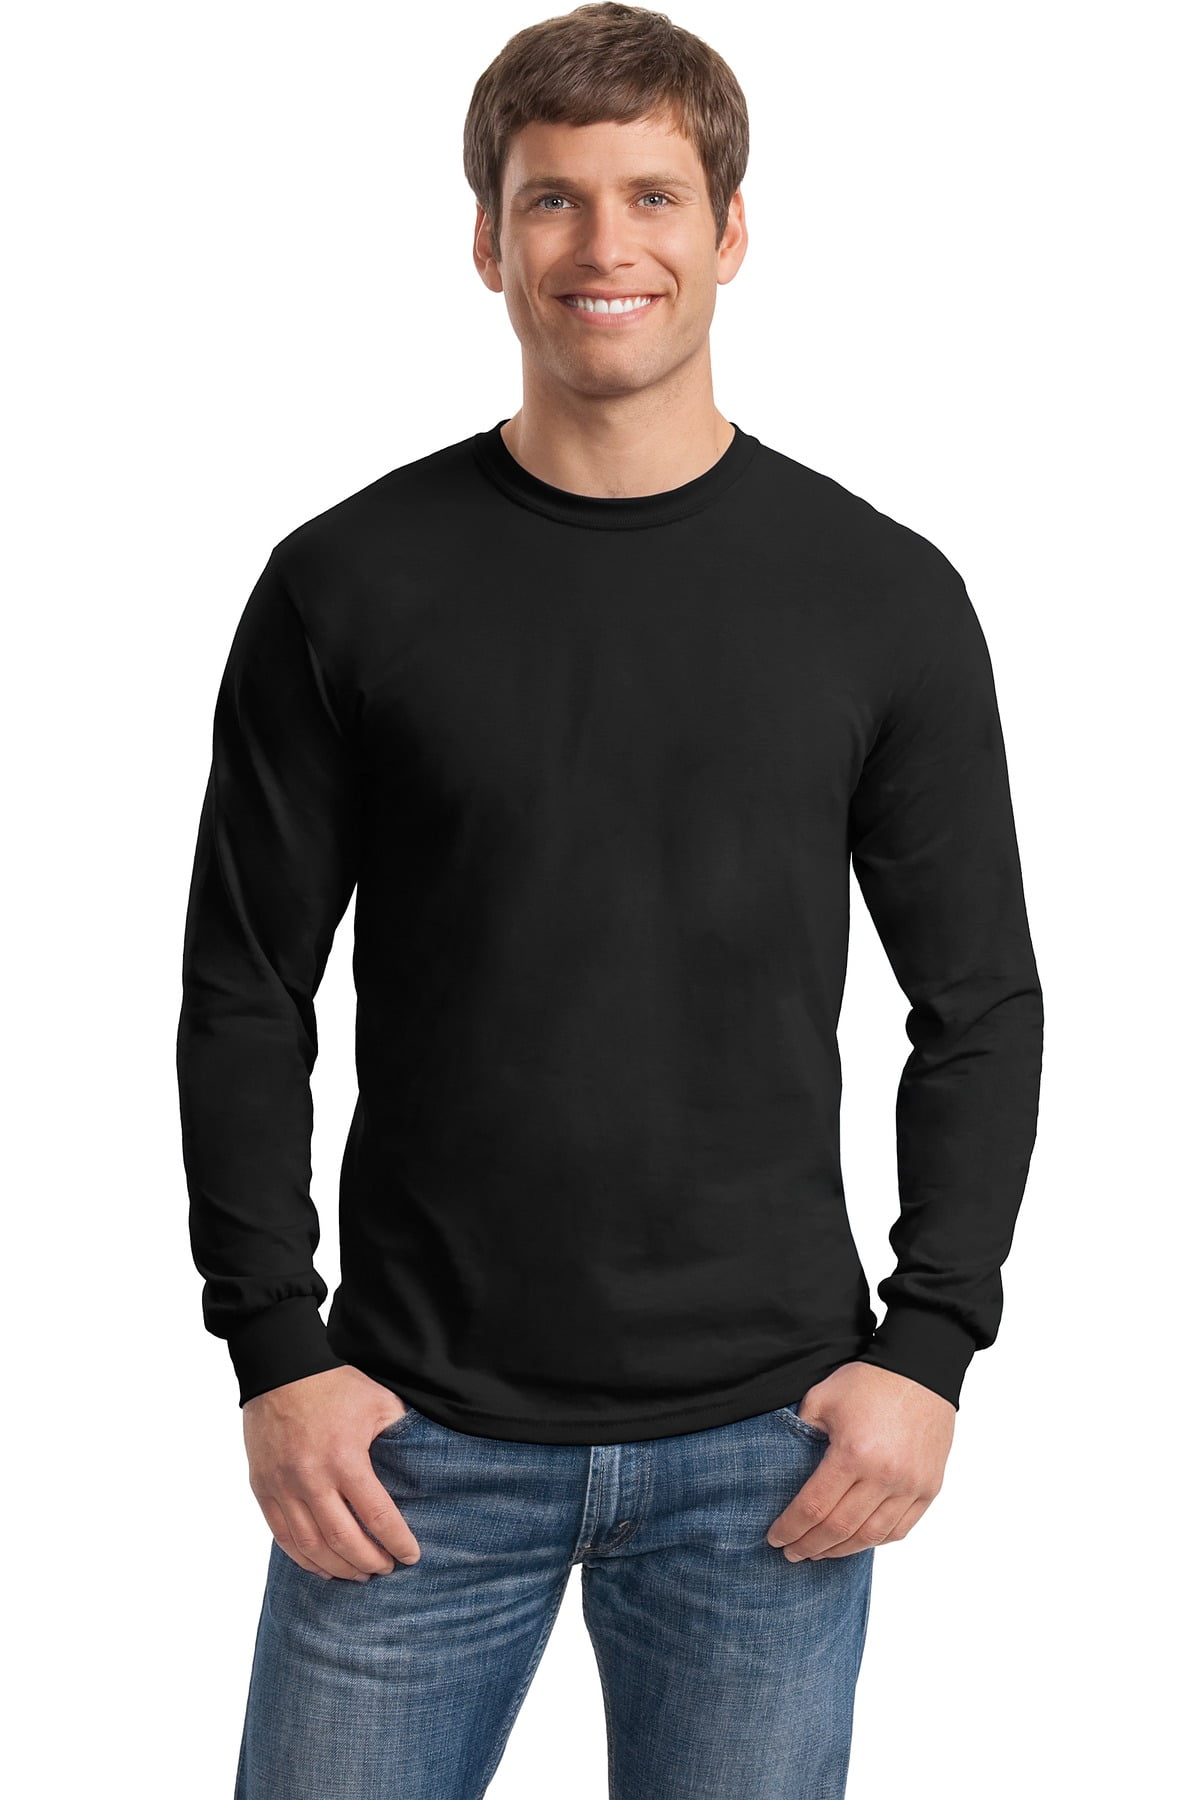 Gildan - Gildan Men's Long Sleeve Rib Knit Cuffs T-Shirt. 8400 ...